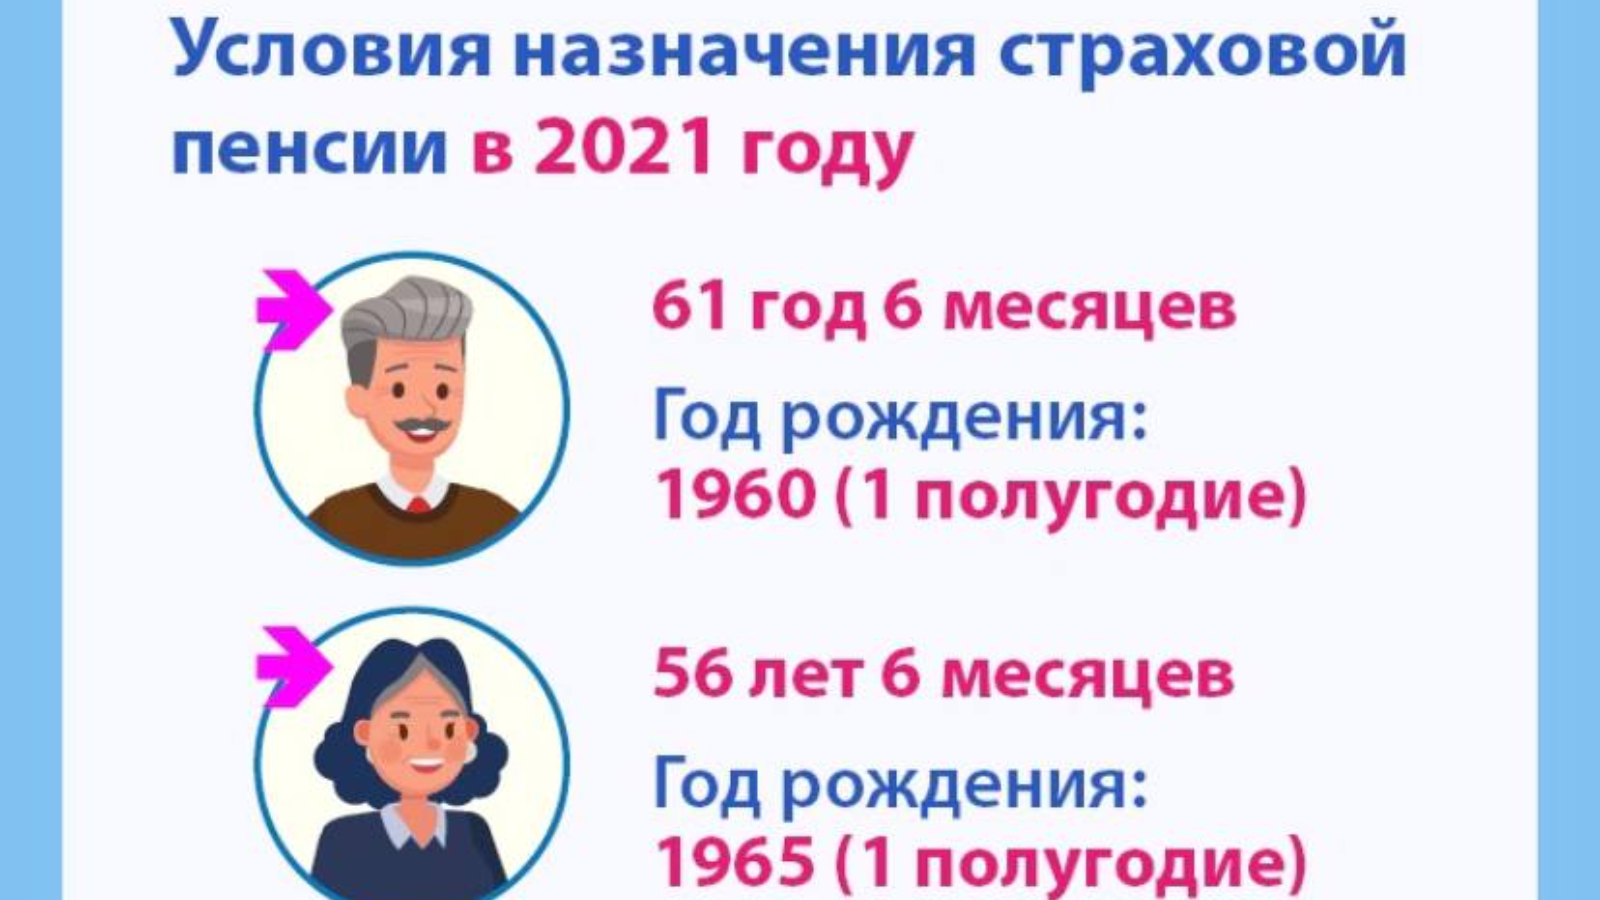 Повышение пенсии 2021 года. Численность ПФР 2021. Пенсионный фонд Шаховская.